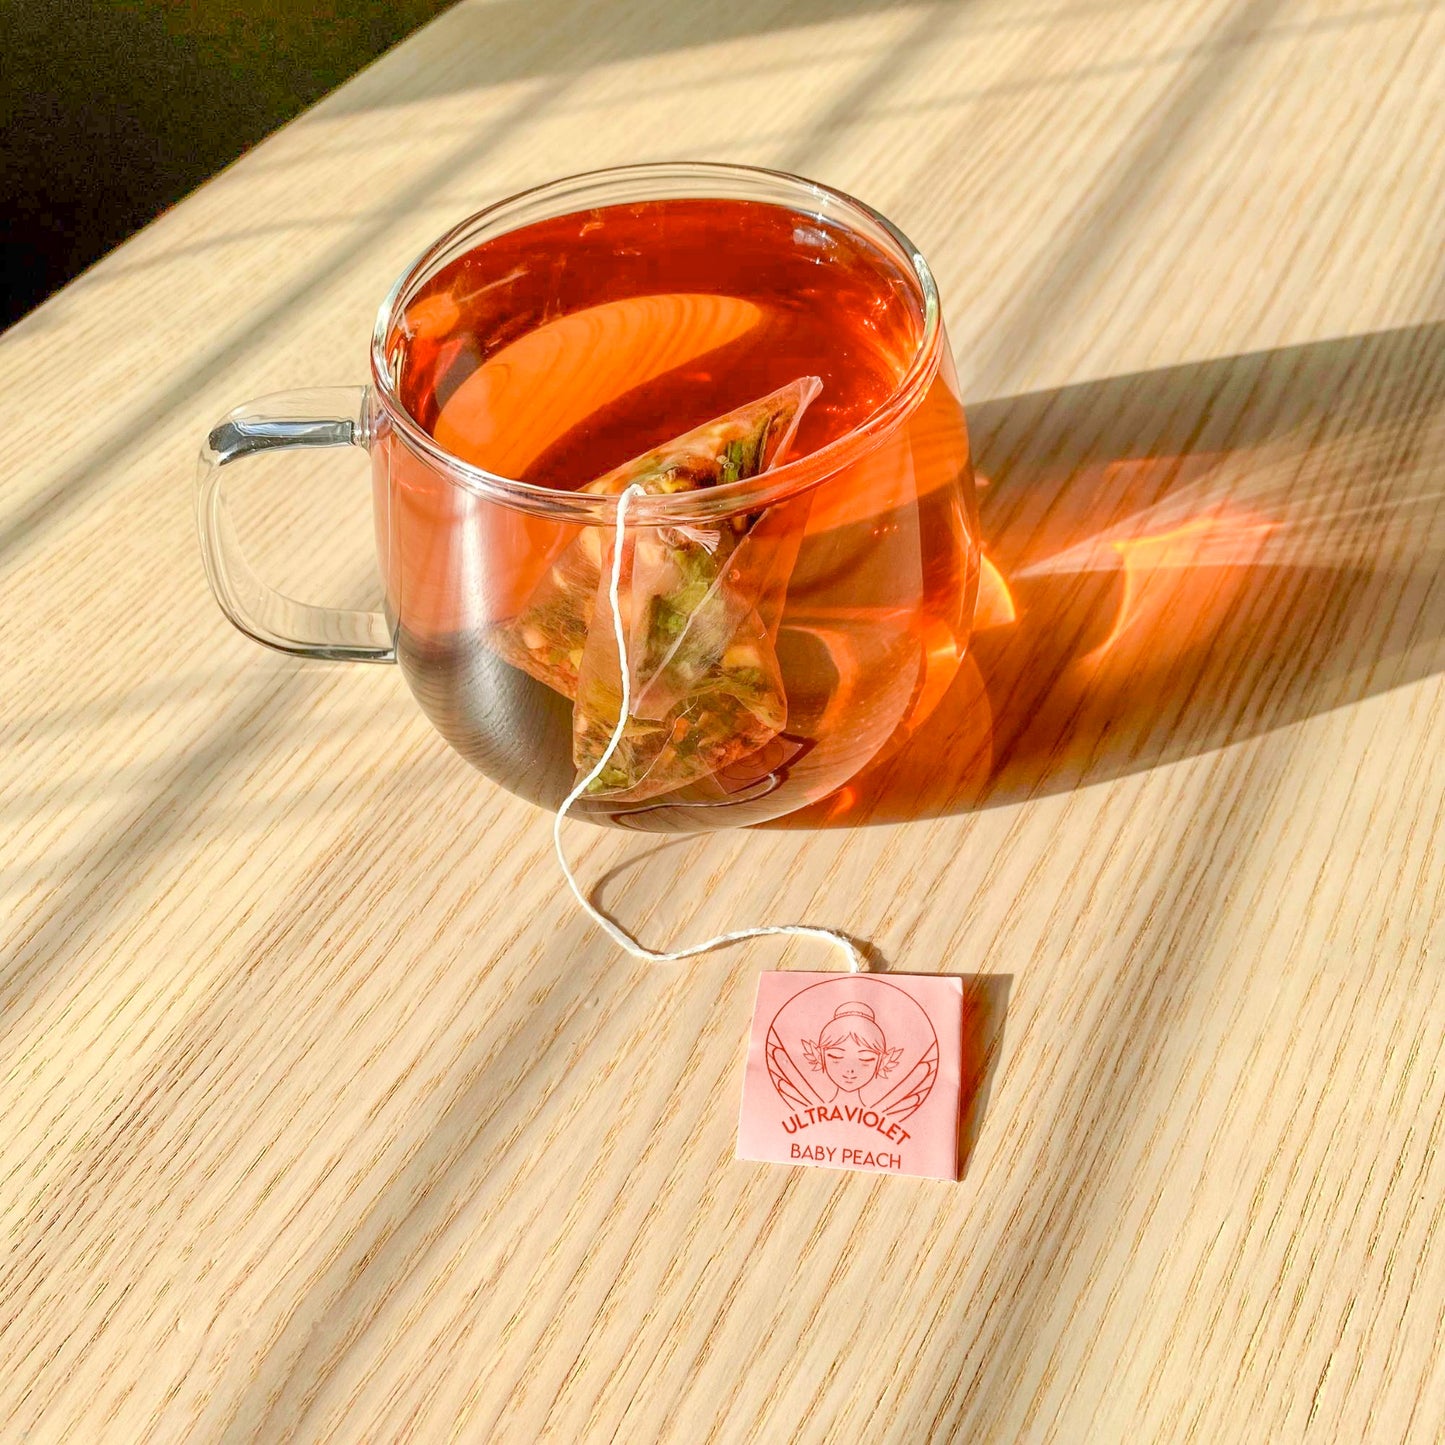 Baby Peach Tea